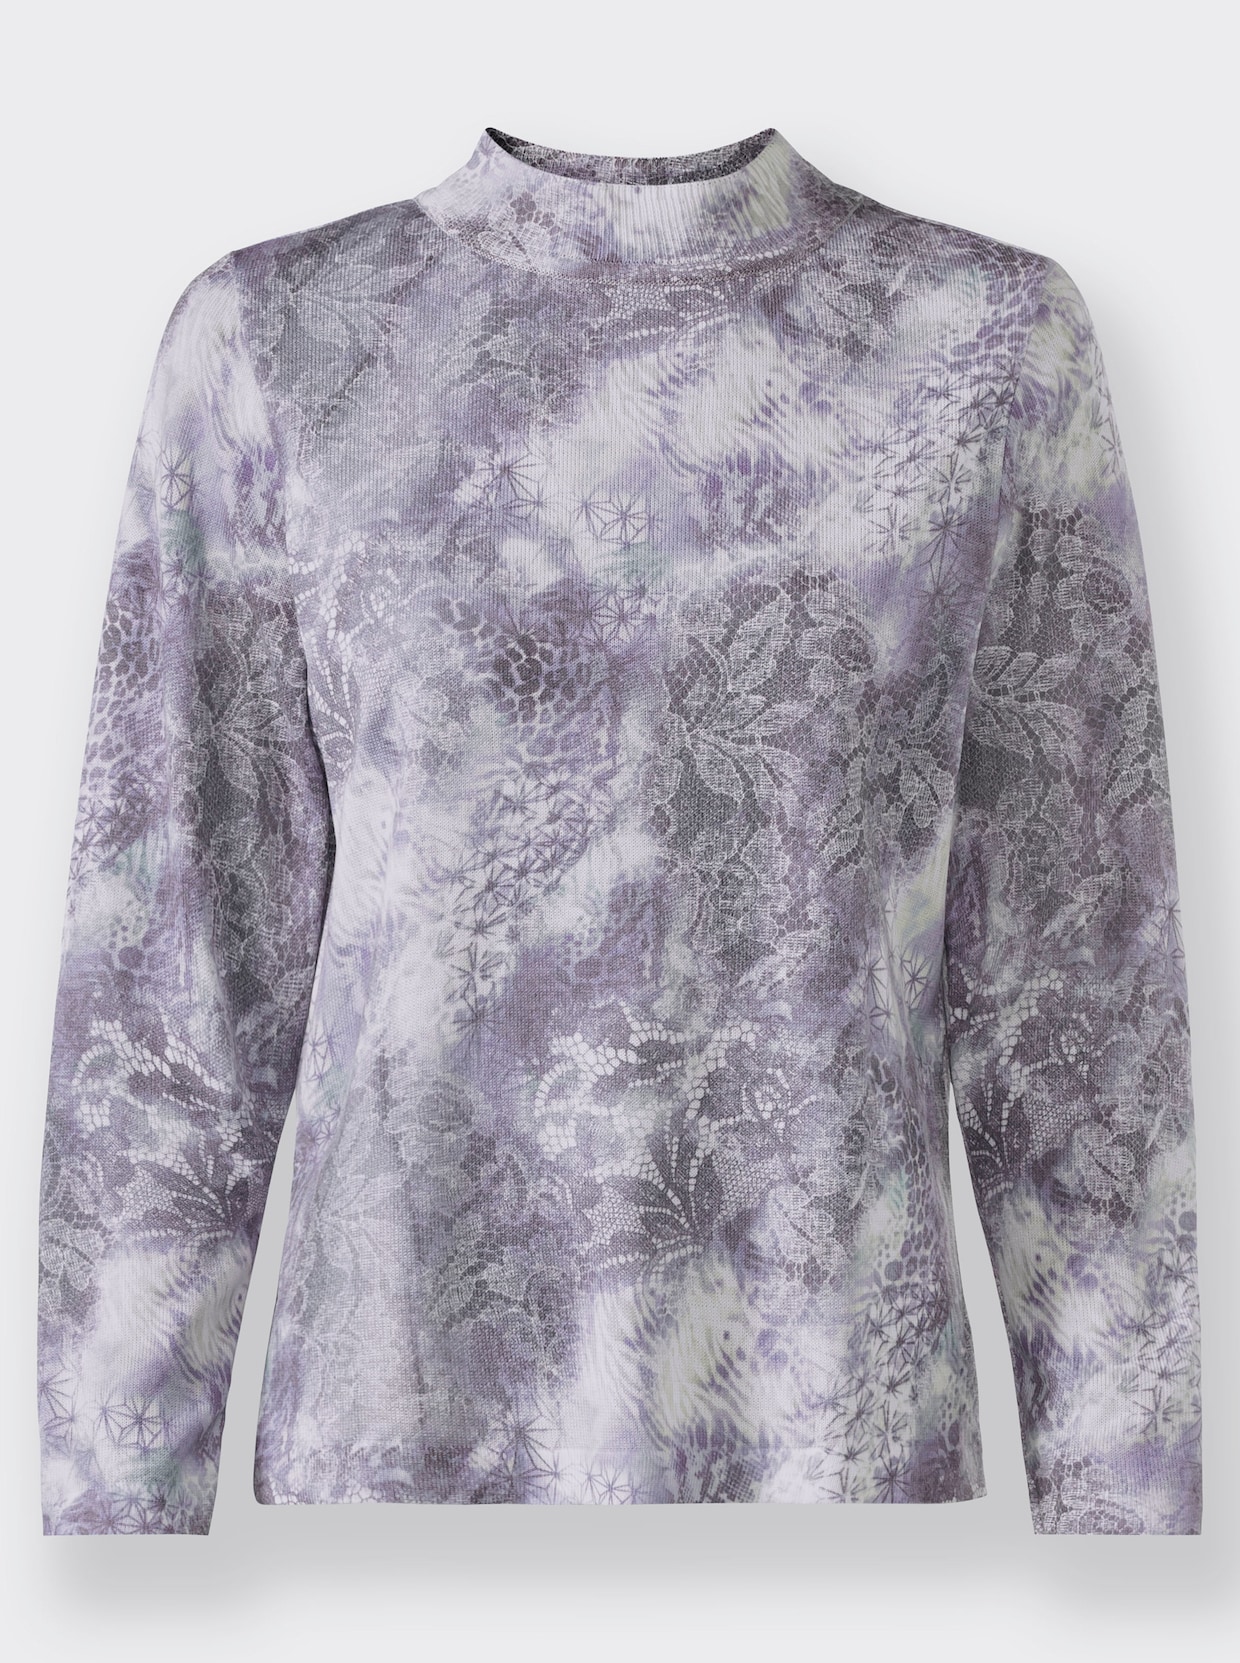 Pullover met lange mouwen - lila geprint